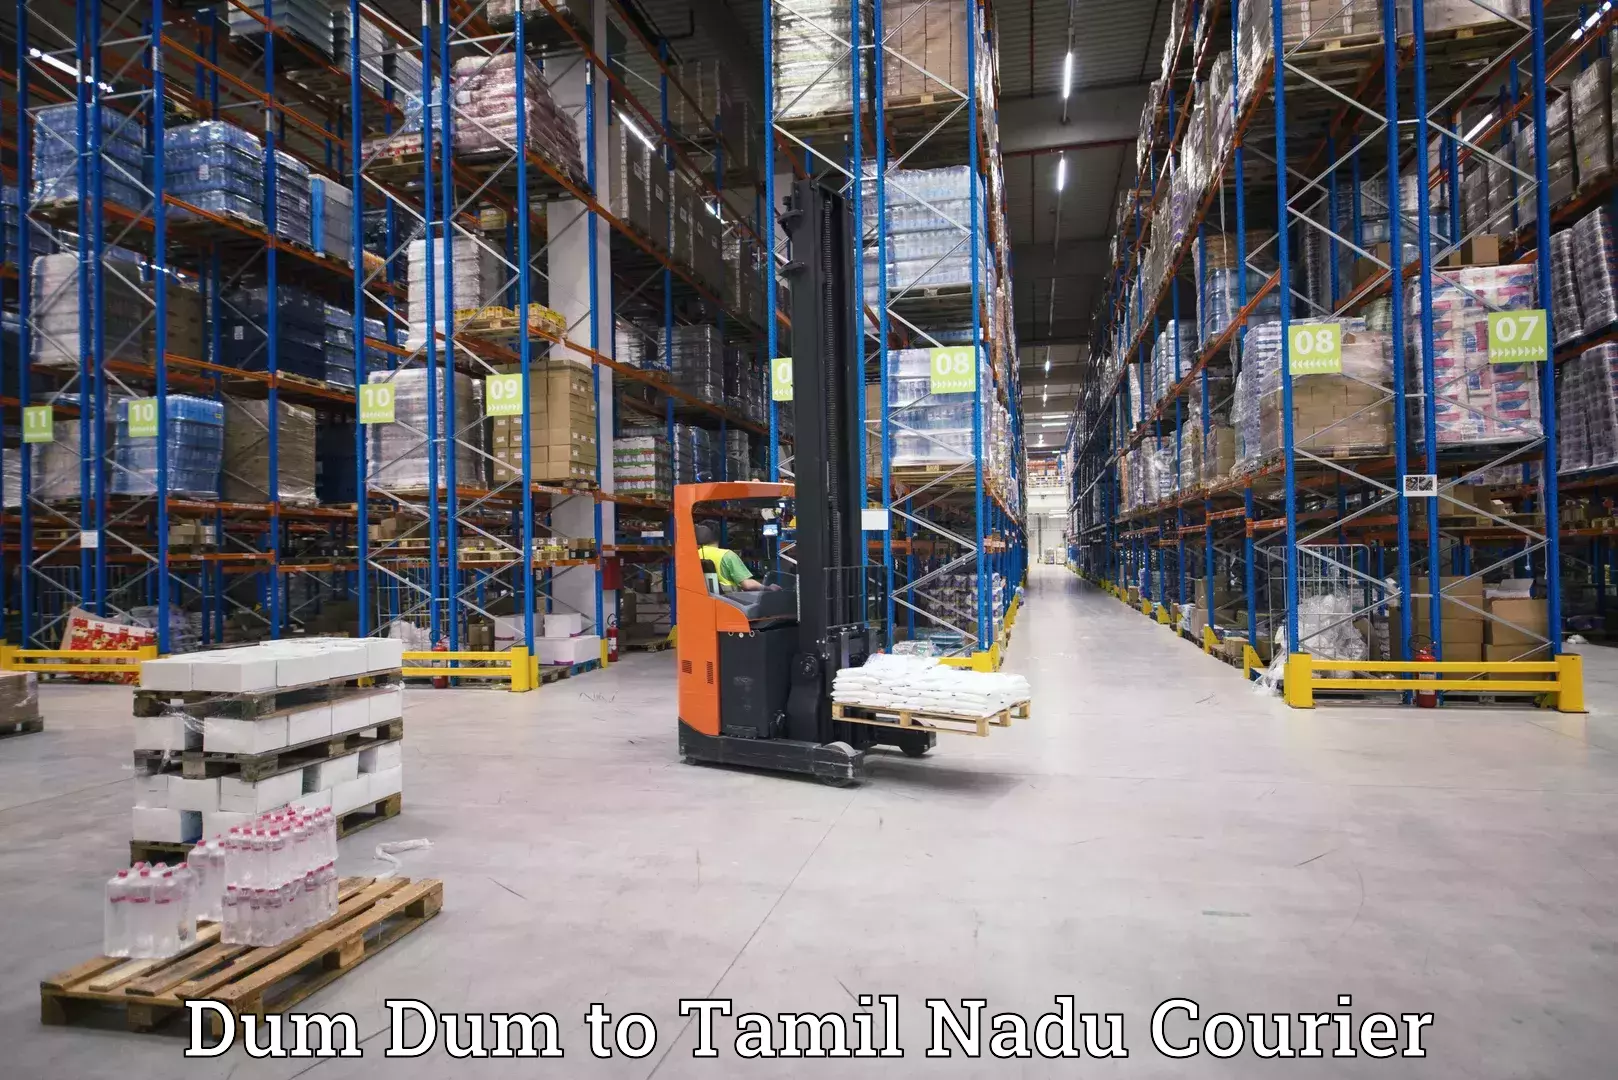 User-friendly courier app Dum Dum to Kalpakkam